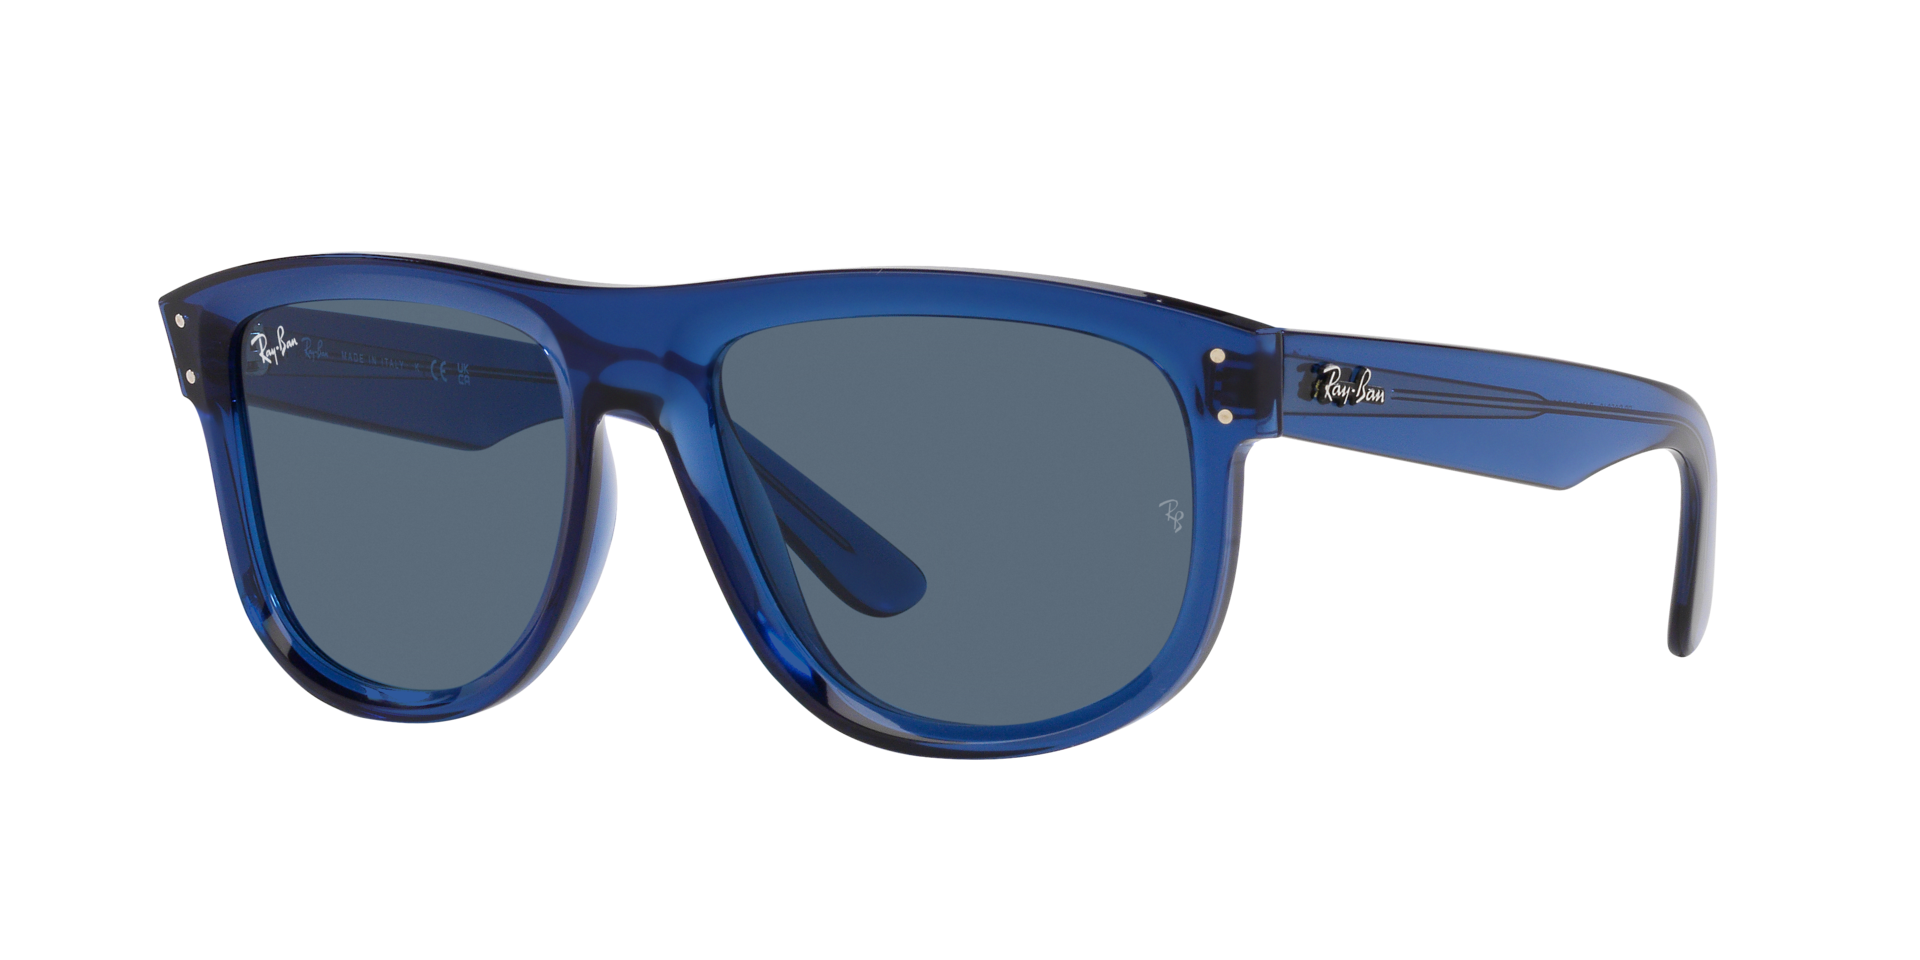 Das Bild zeigt die Sonnenbrille RBR0501S 67083A von der  Marke Ray Ban in dunkelblau transparent